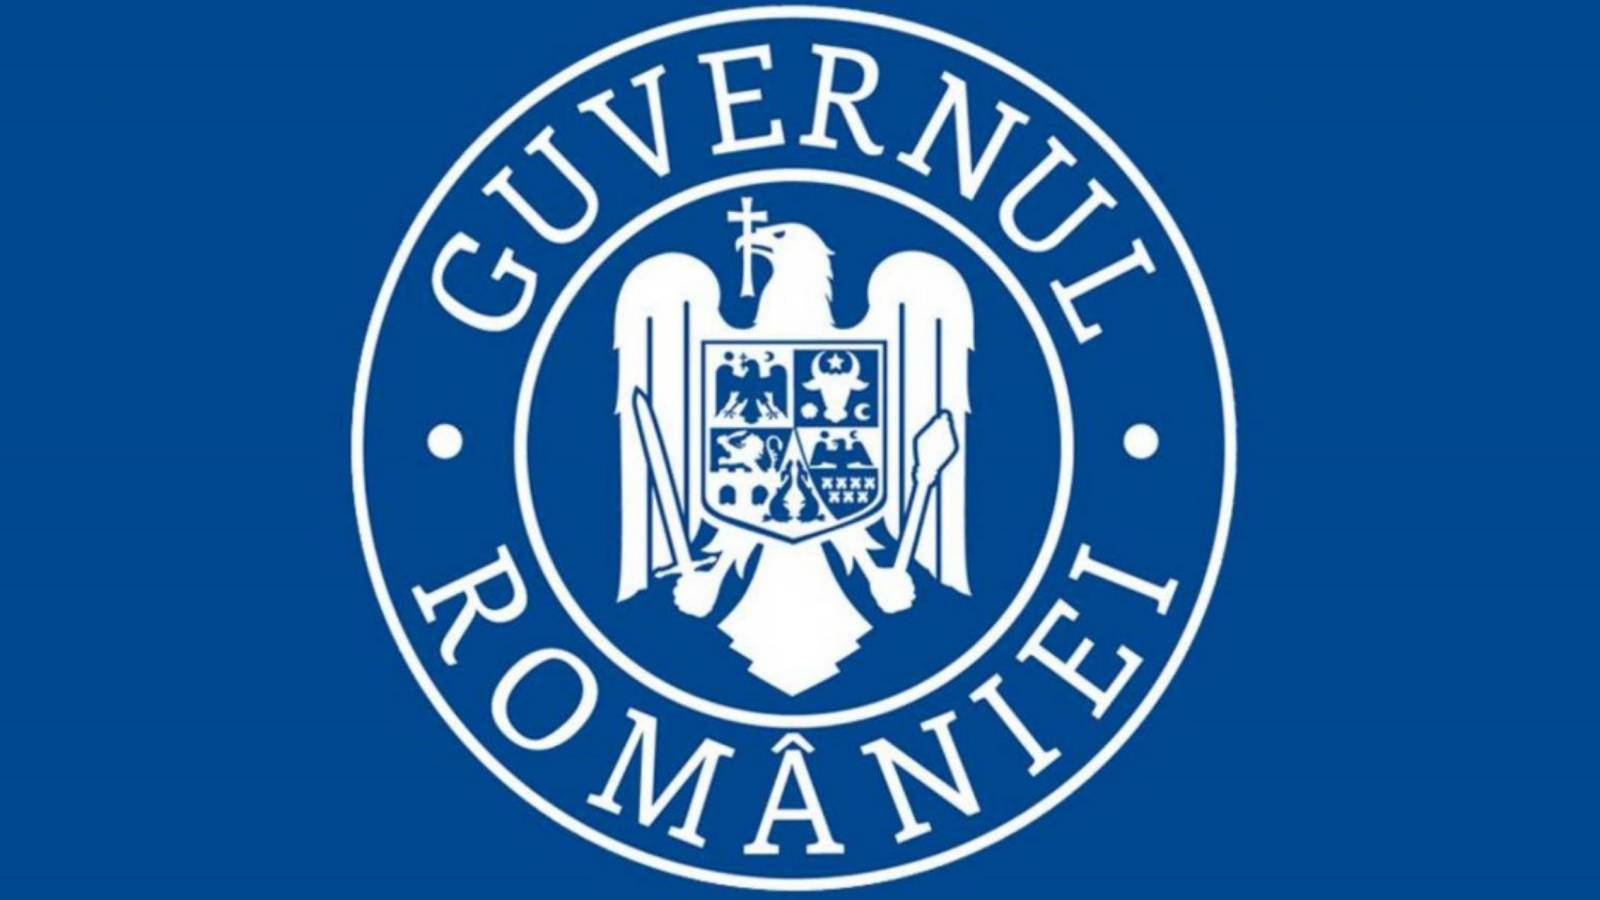 Noodvergadering van de Roemeense regering